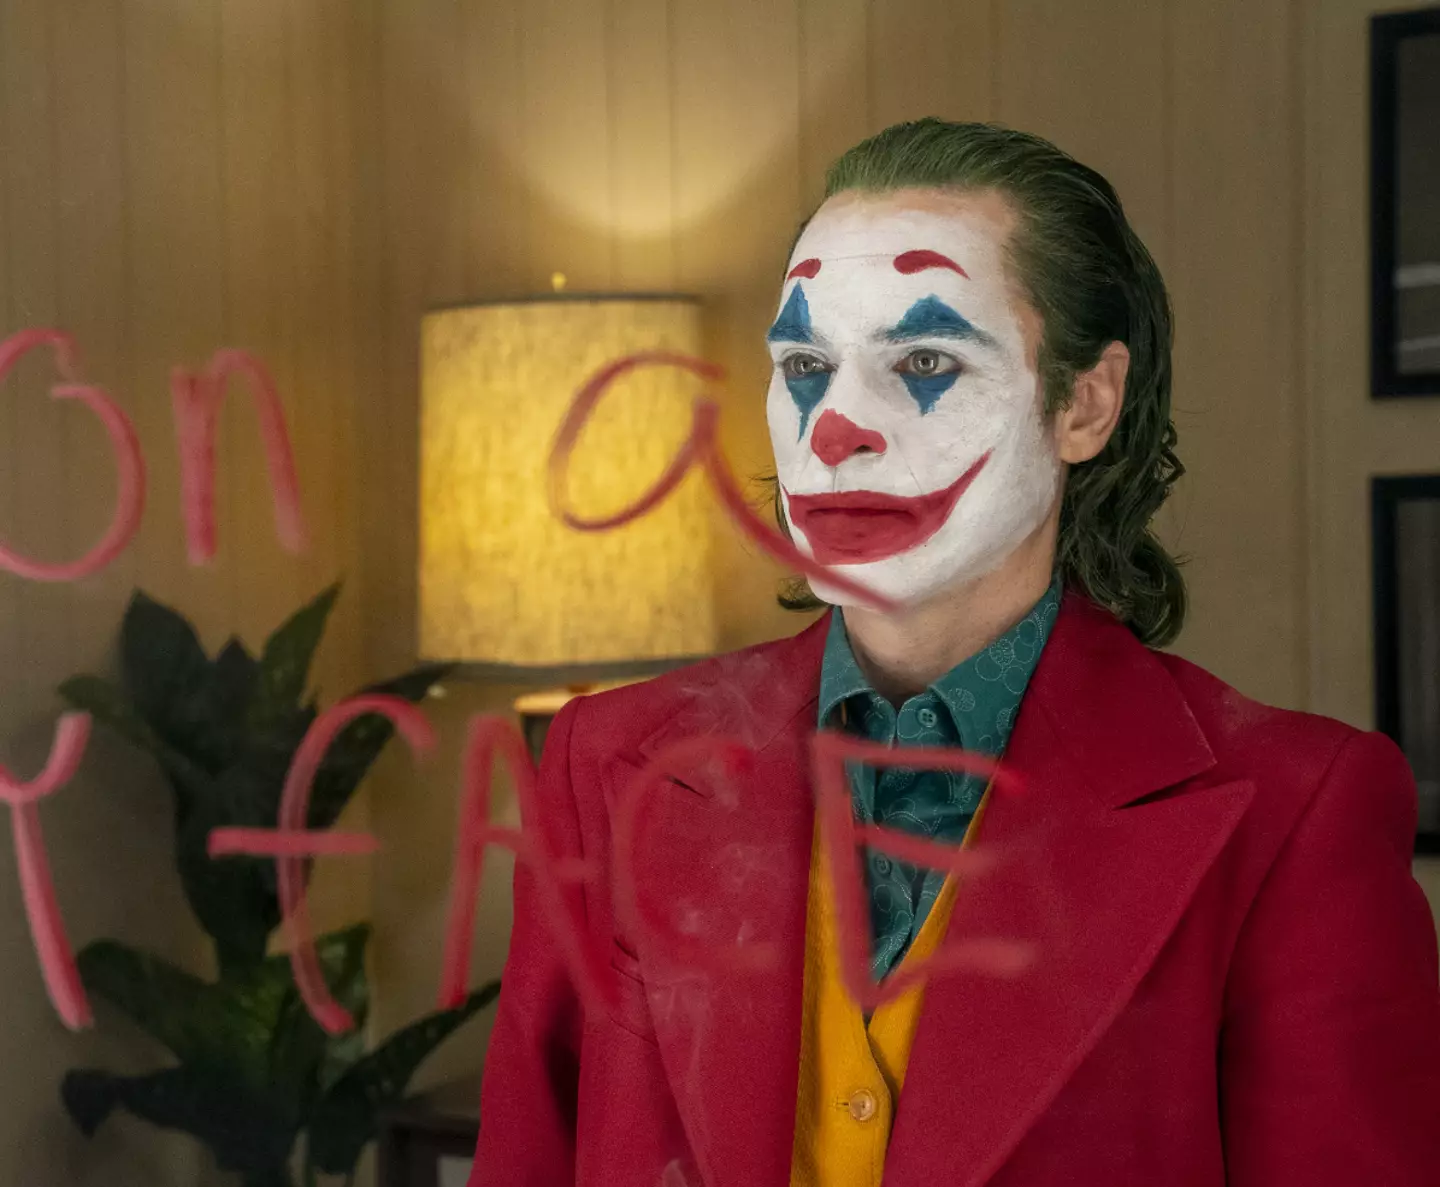 Phoenix stars as the clown in Joker.